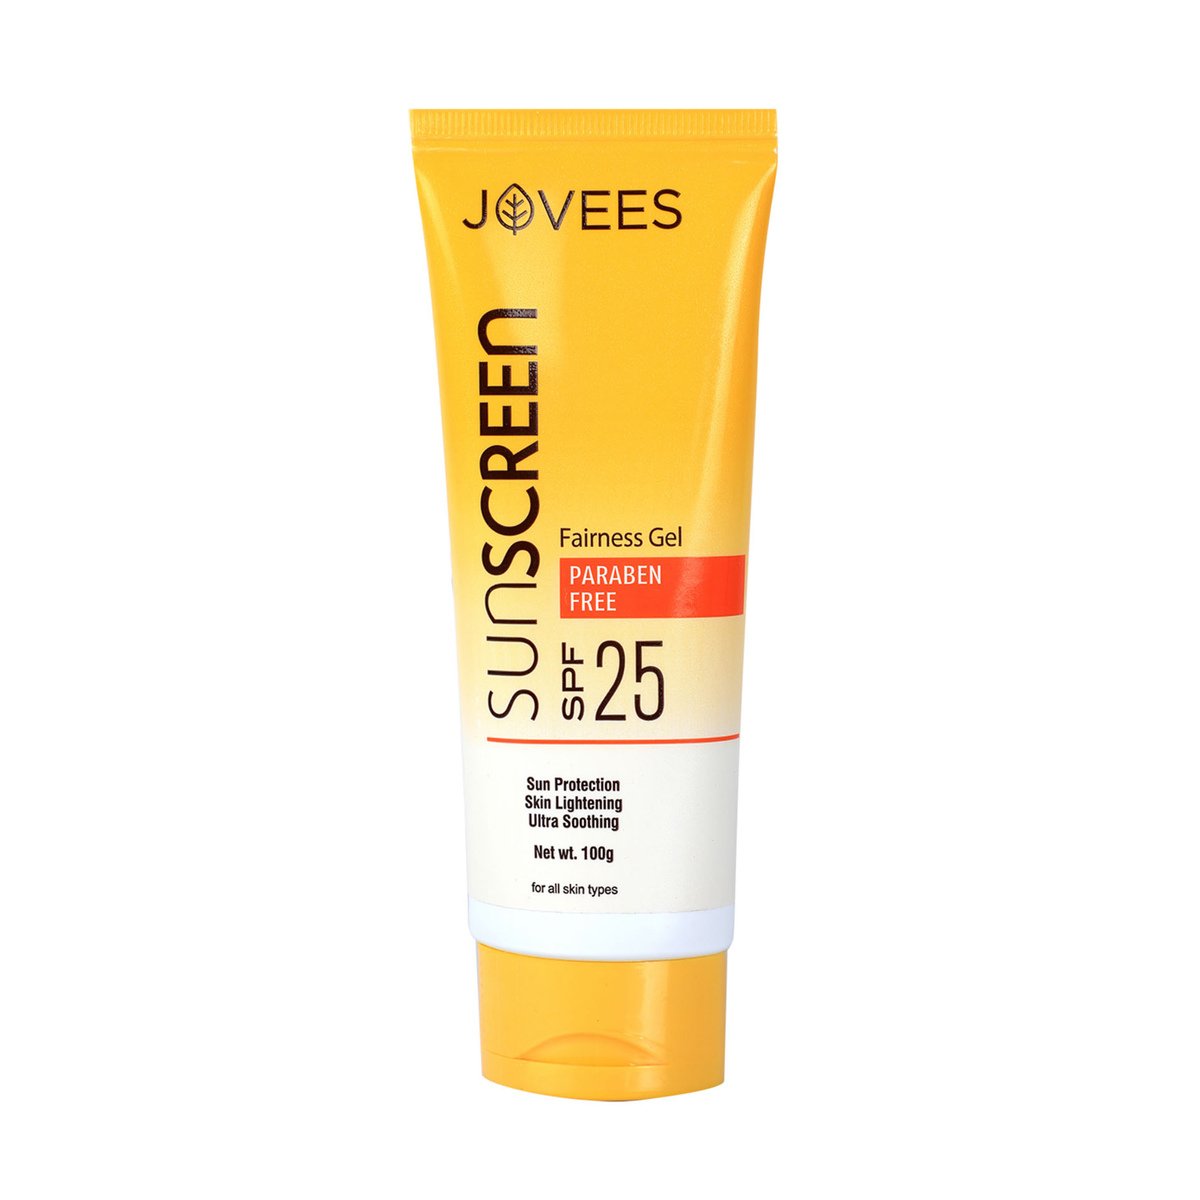 Jovees Fairness Gel Sunscreen SPF 25, 100 g